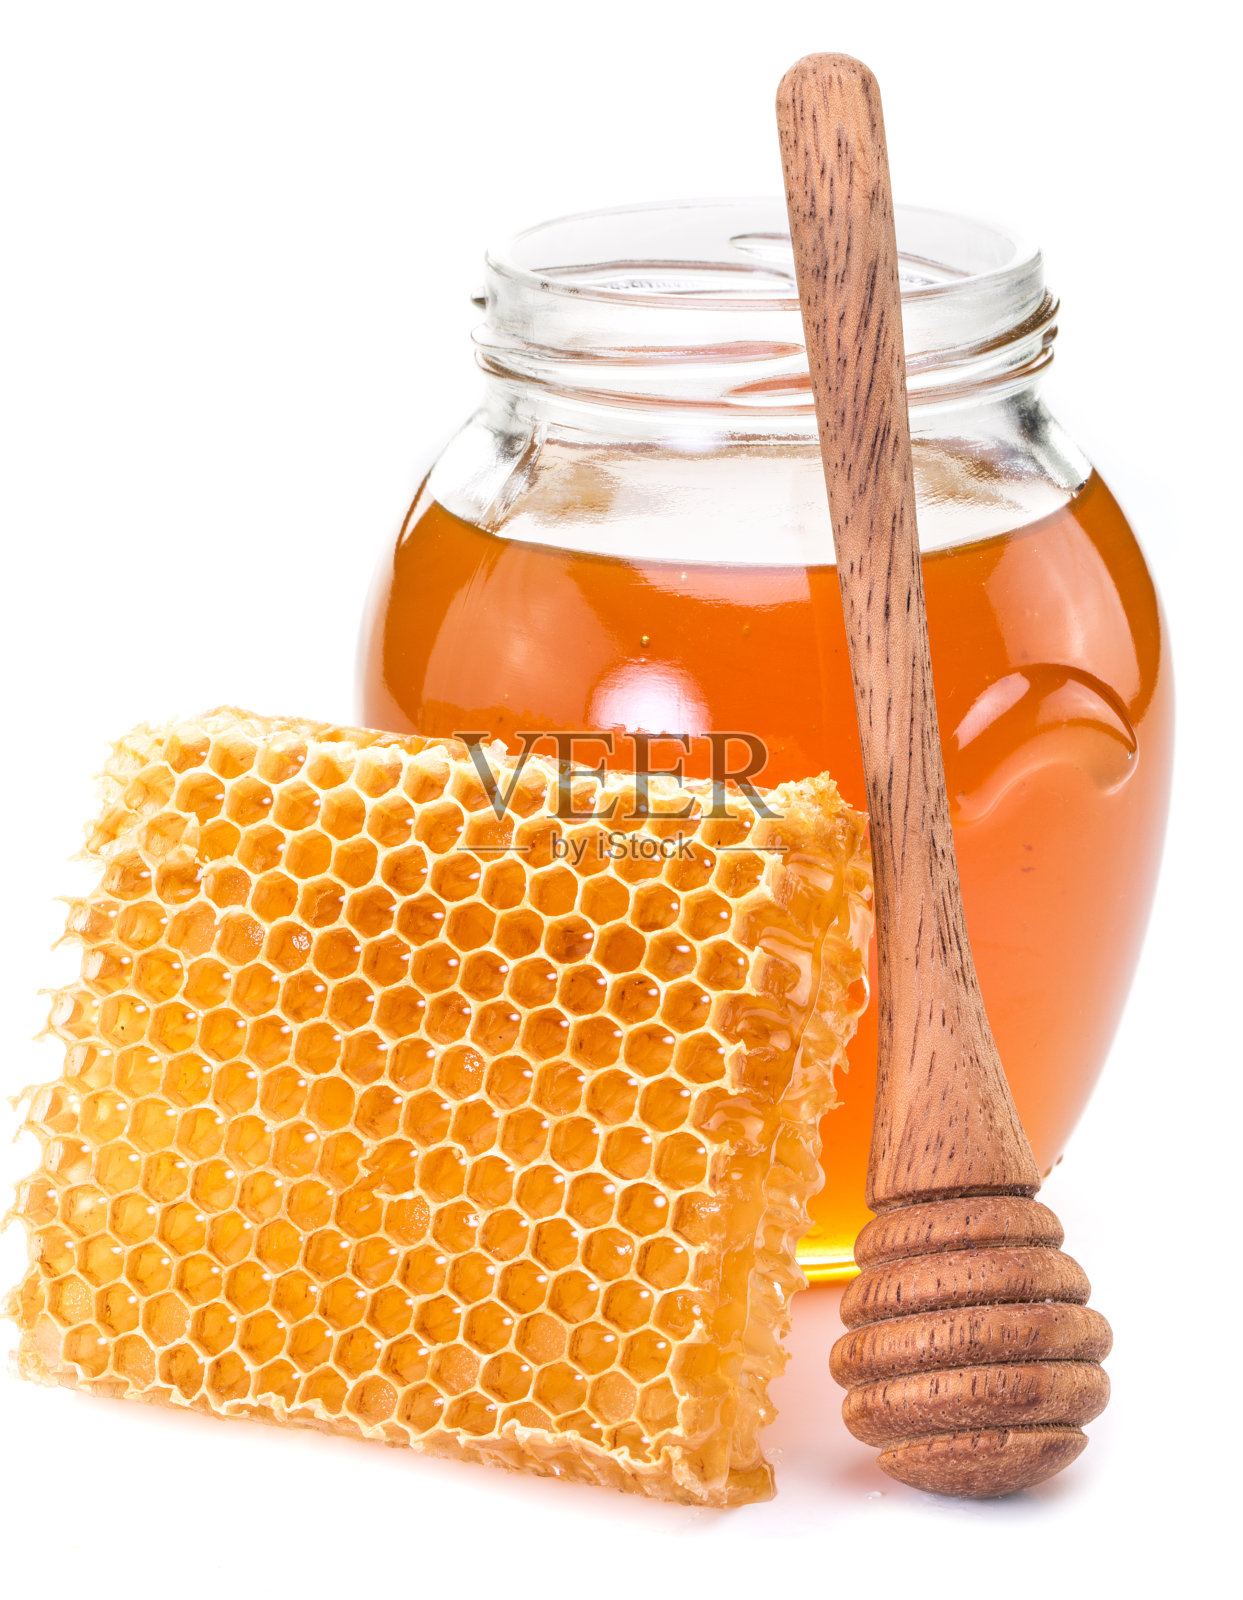 罐子里装满了新鲜的蜂蜜和蜂窝。照片摄影图片